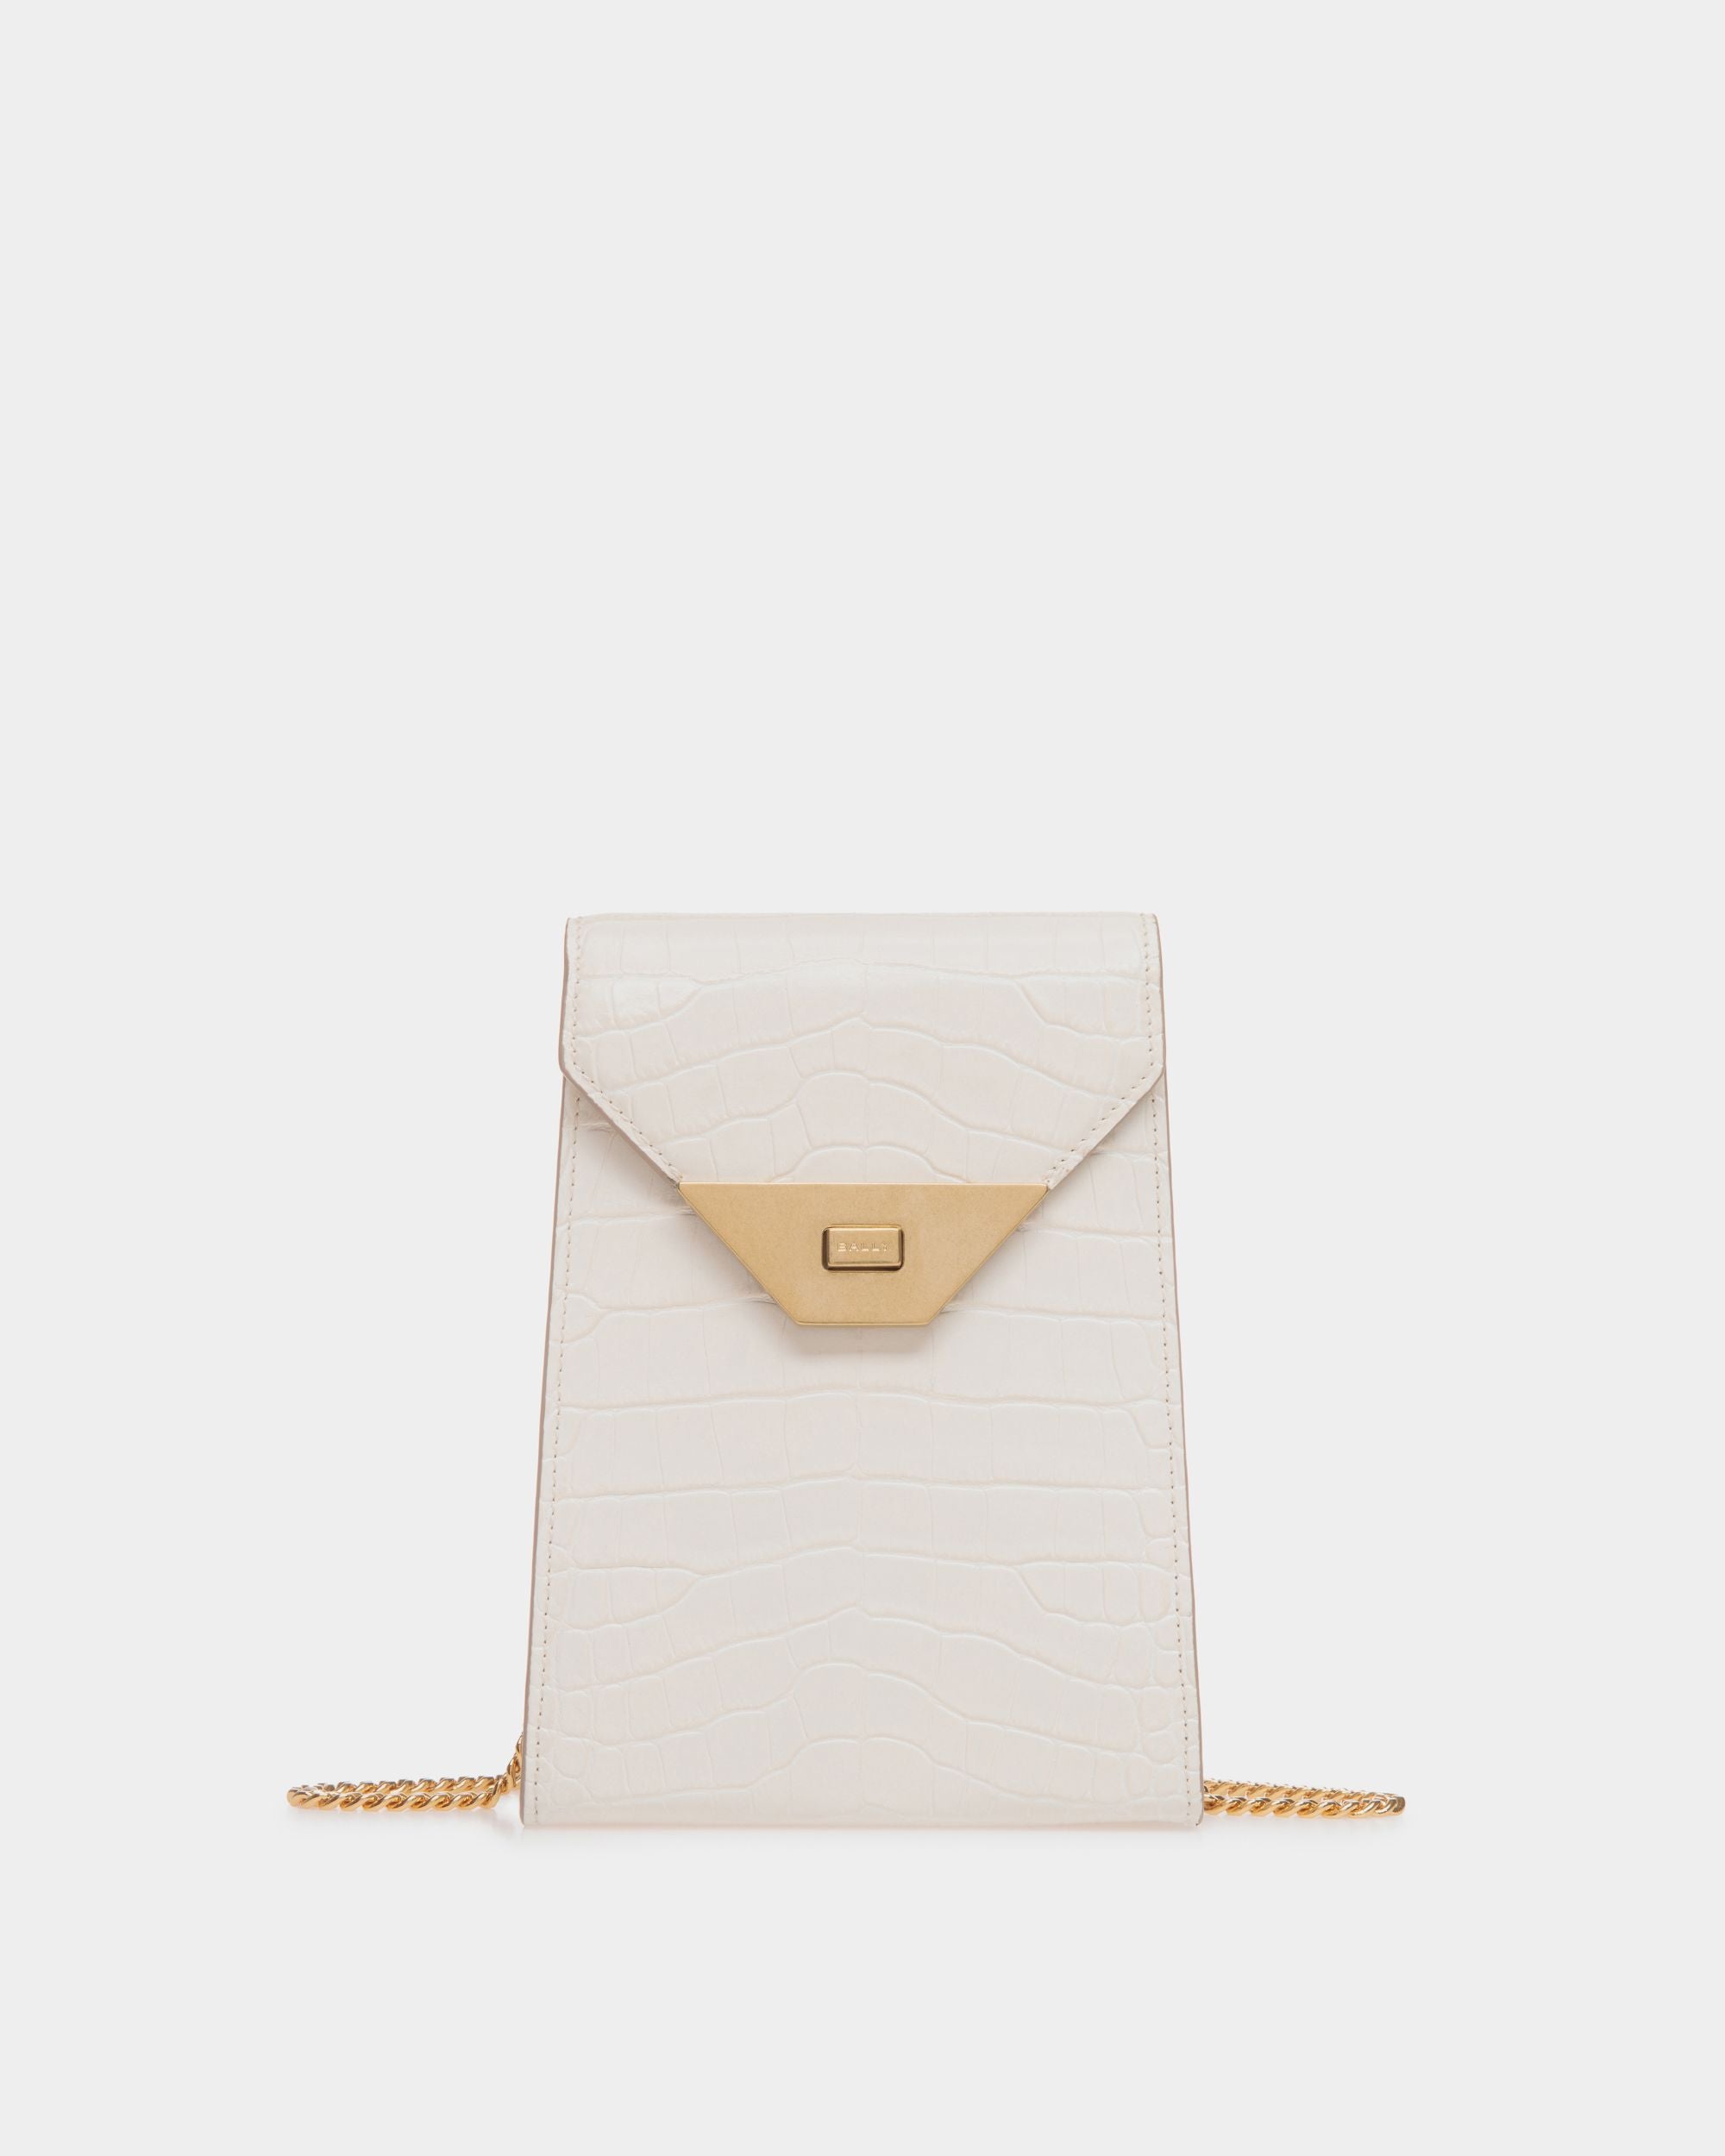 Tilt | Women's Phone Bag in White Crocodile Print Leather | Bally | Still Life Front